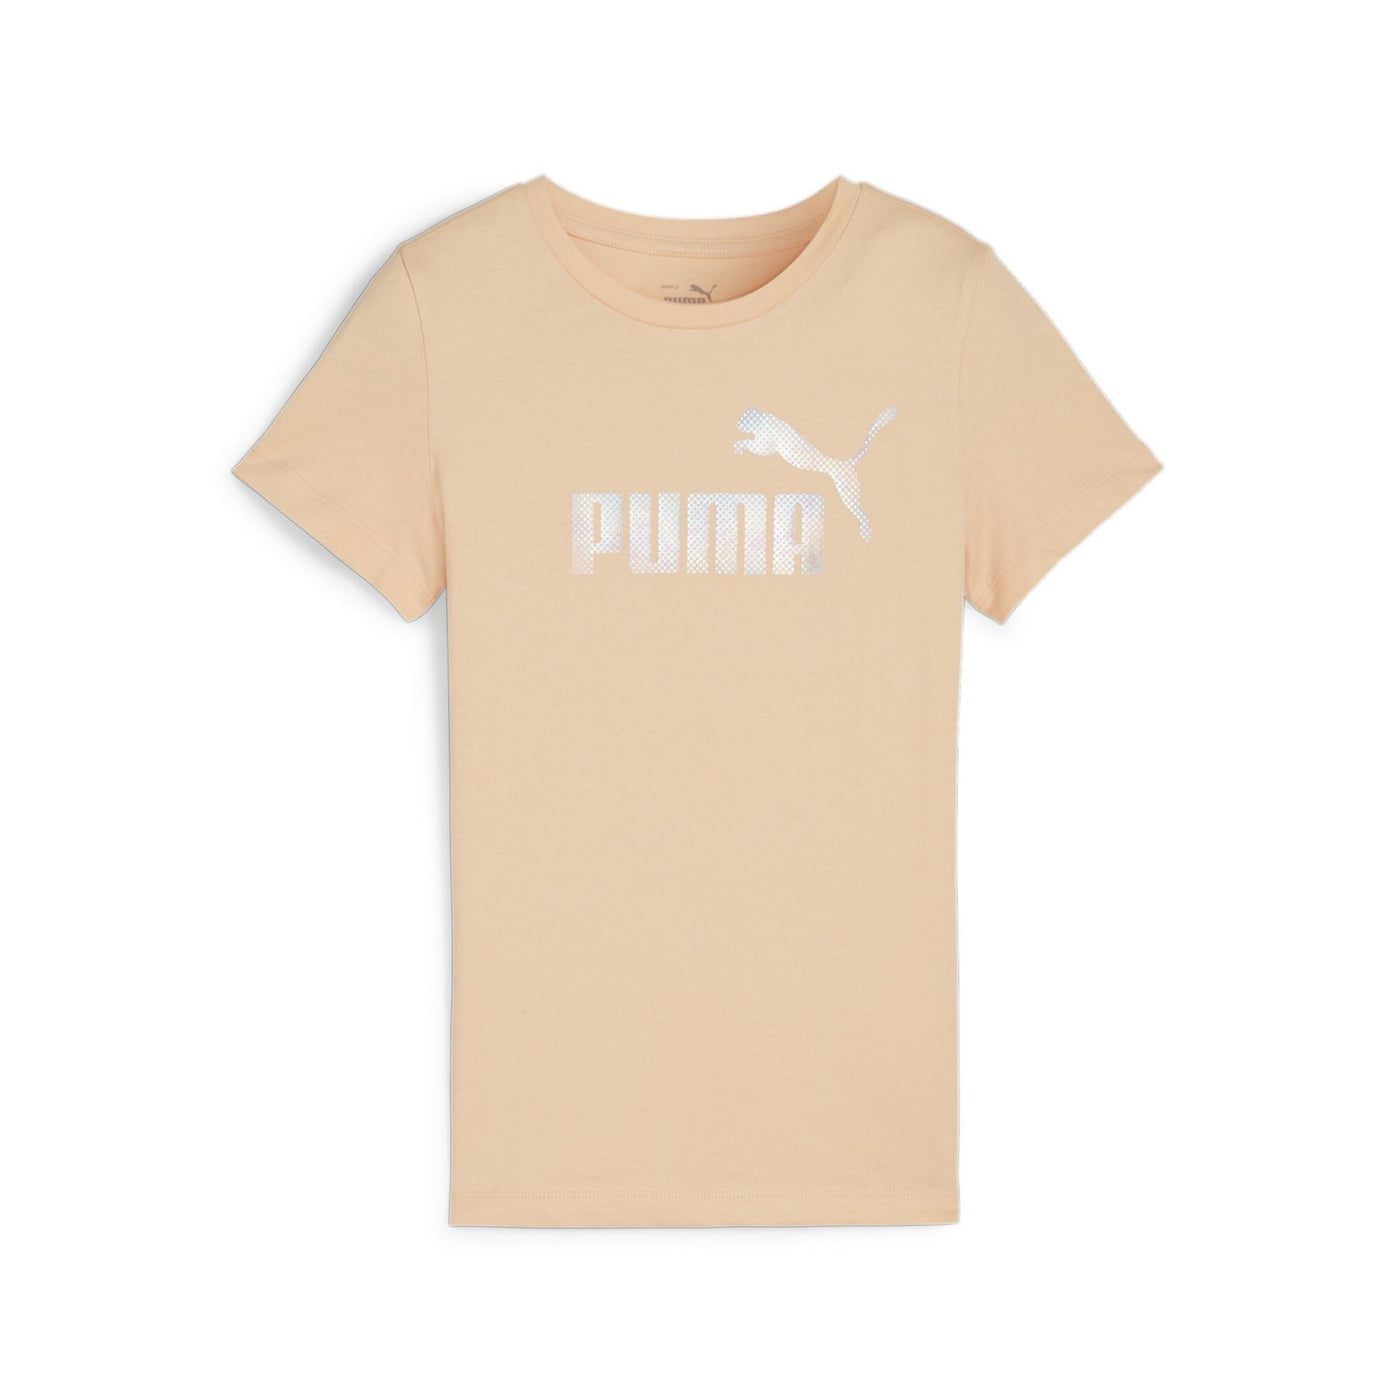 680250-45 - T-Shirt - Puma